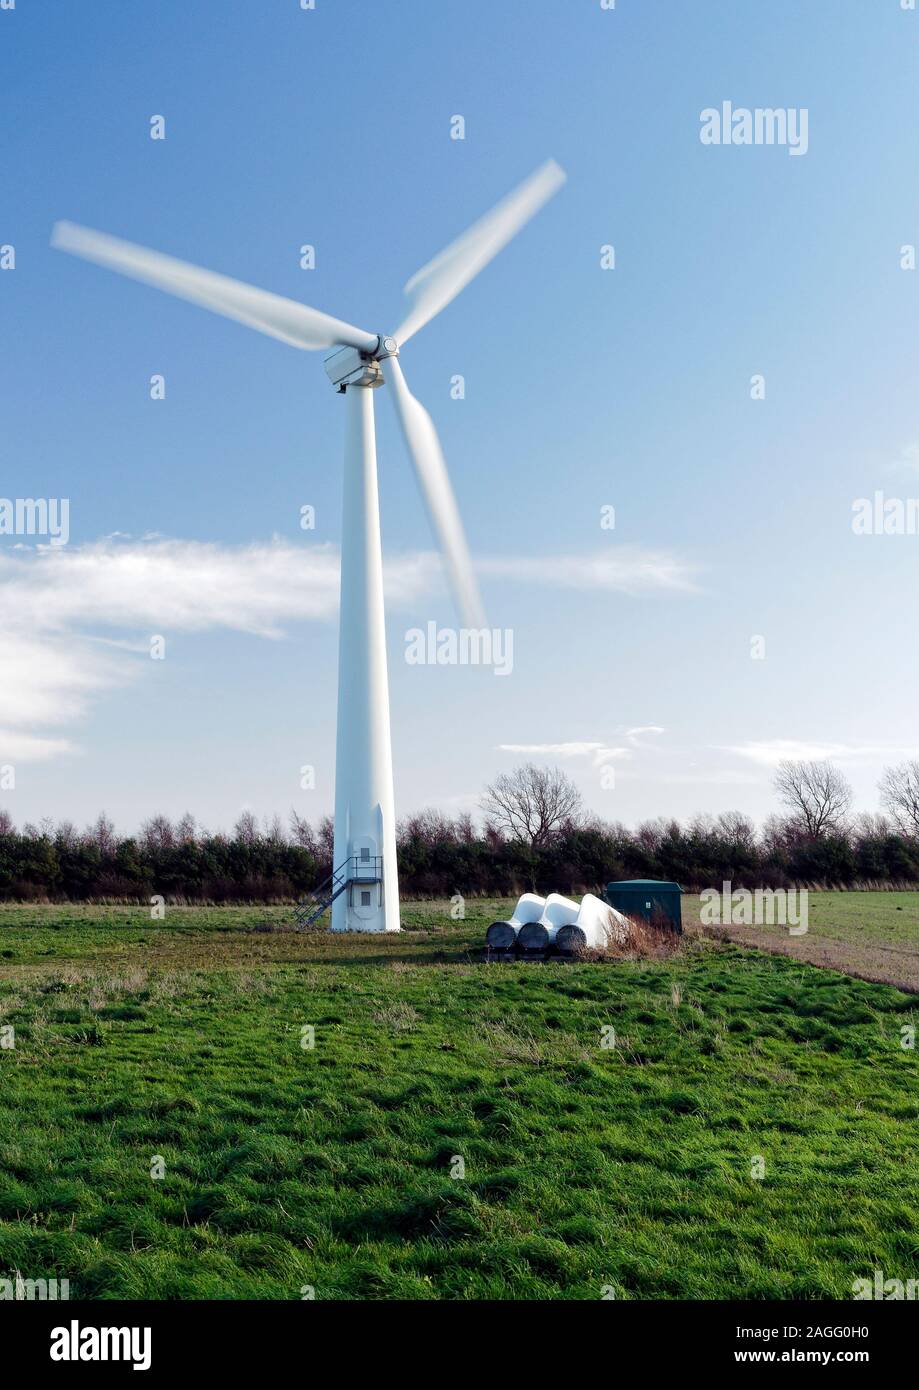 La turbina de viento onshore, uno de los tres sobre el terreno elevado en Somerton, Norfolk produciendo electricidad verde en este ventoso ubicación. Foto de stock